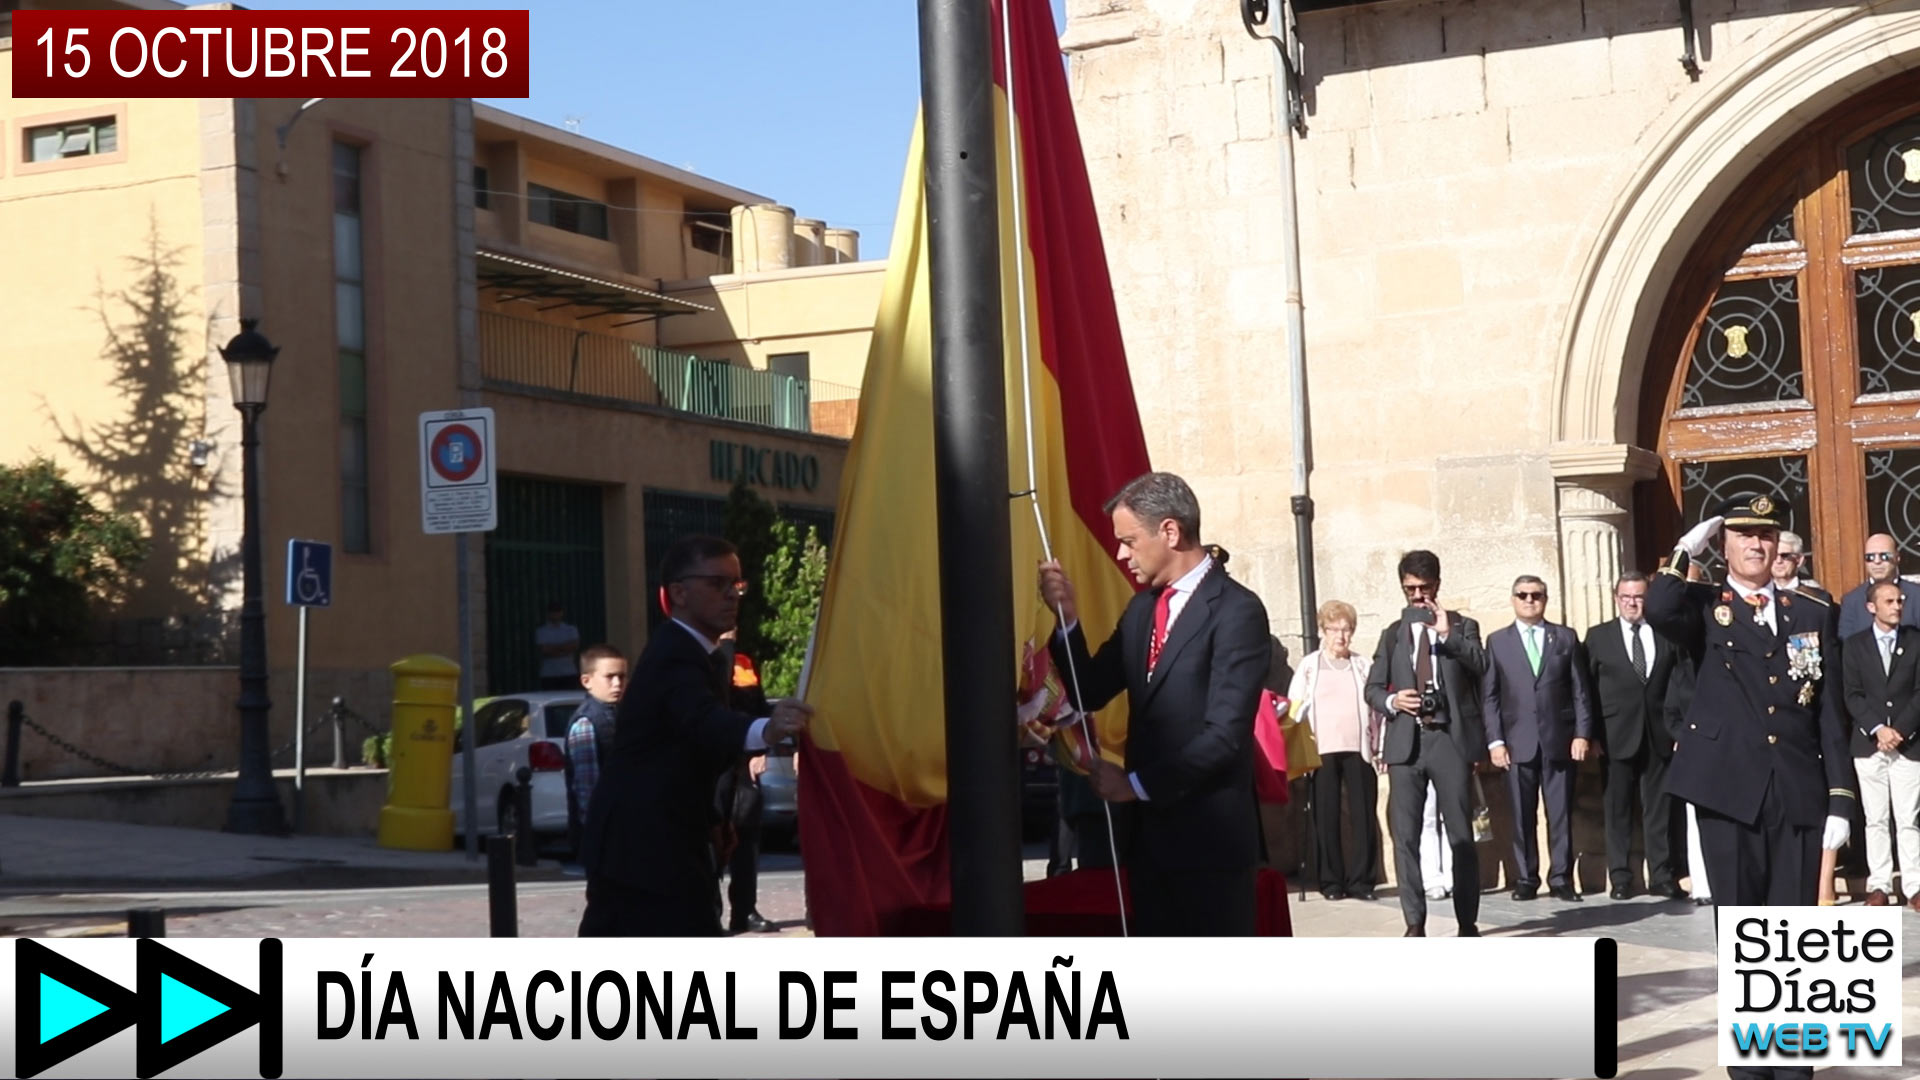 DÍA NACIONAL DE ESPAÑA – 15 OCTUBRE 2018